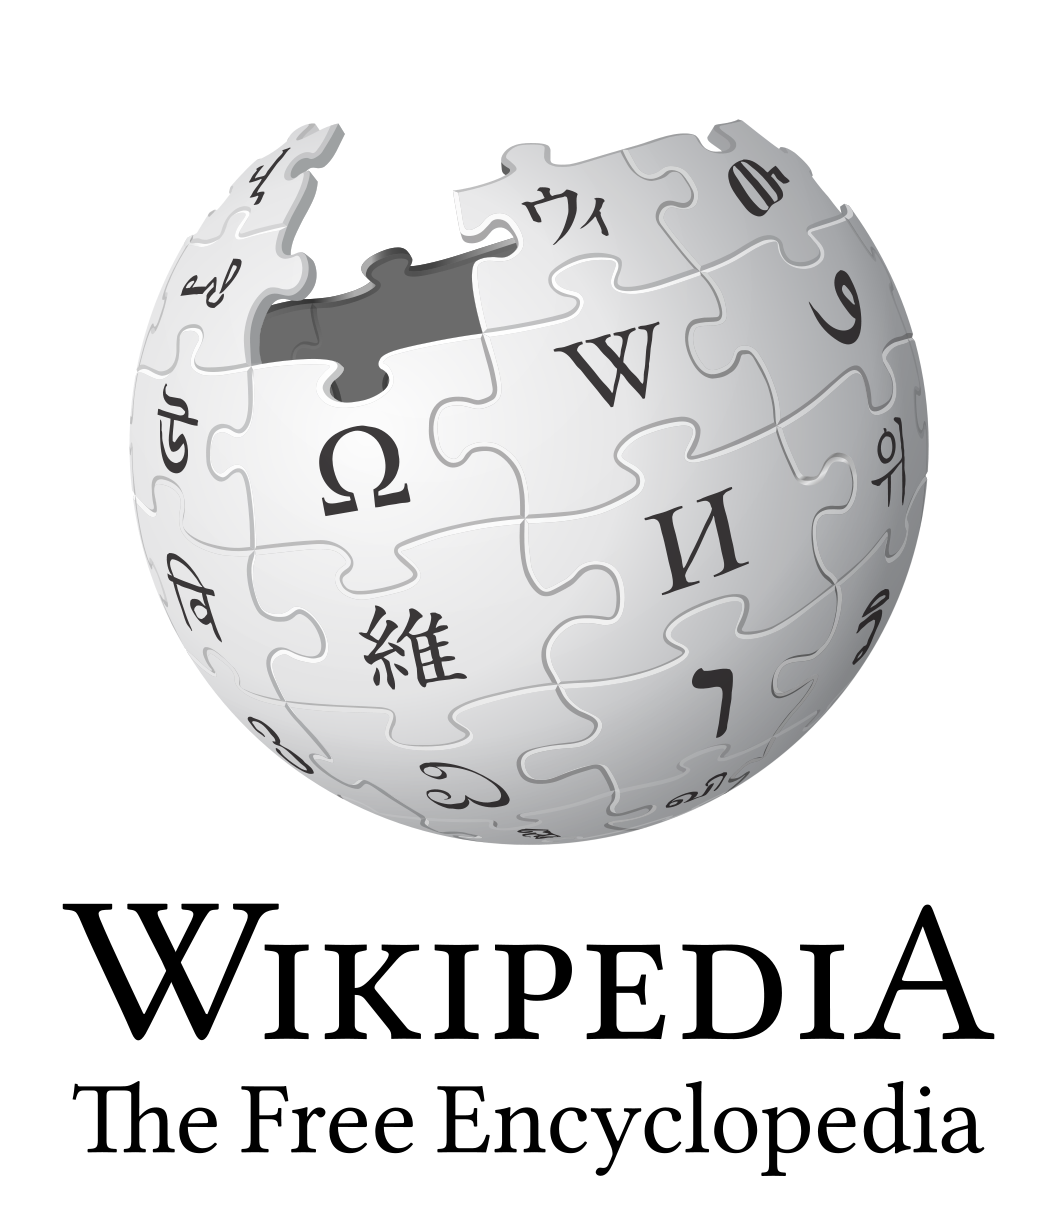 Saint Seiya: Next Dimension - Wikipedia